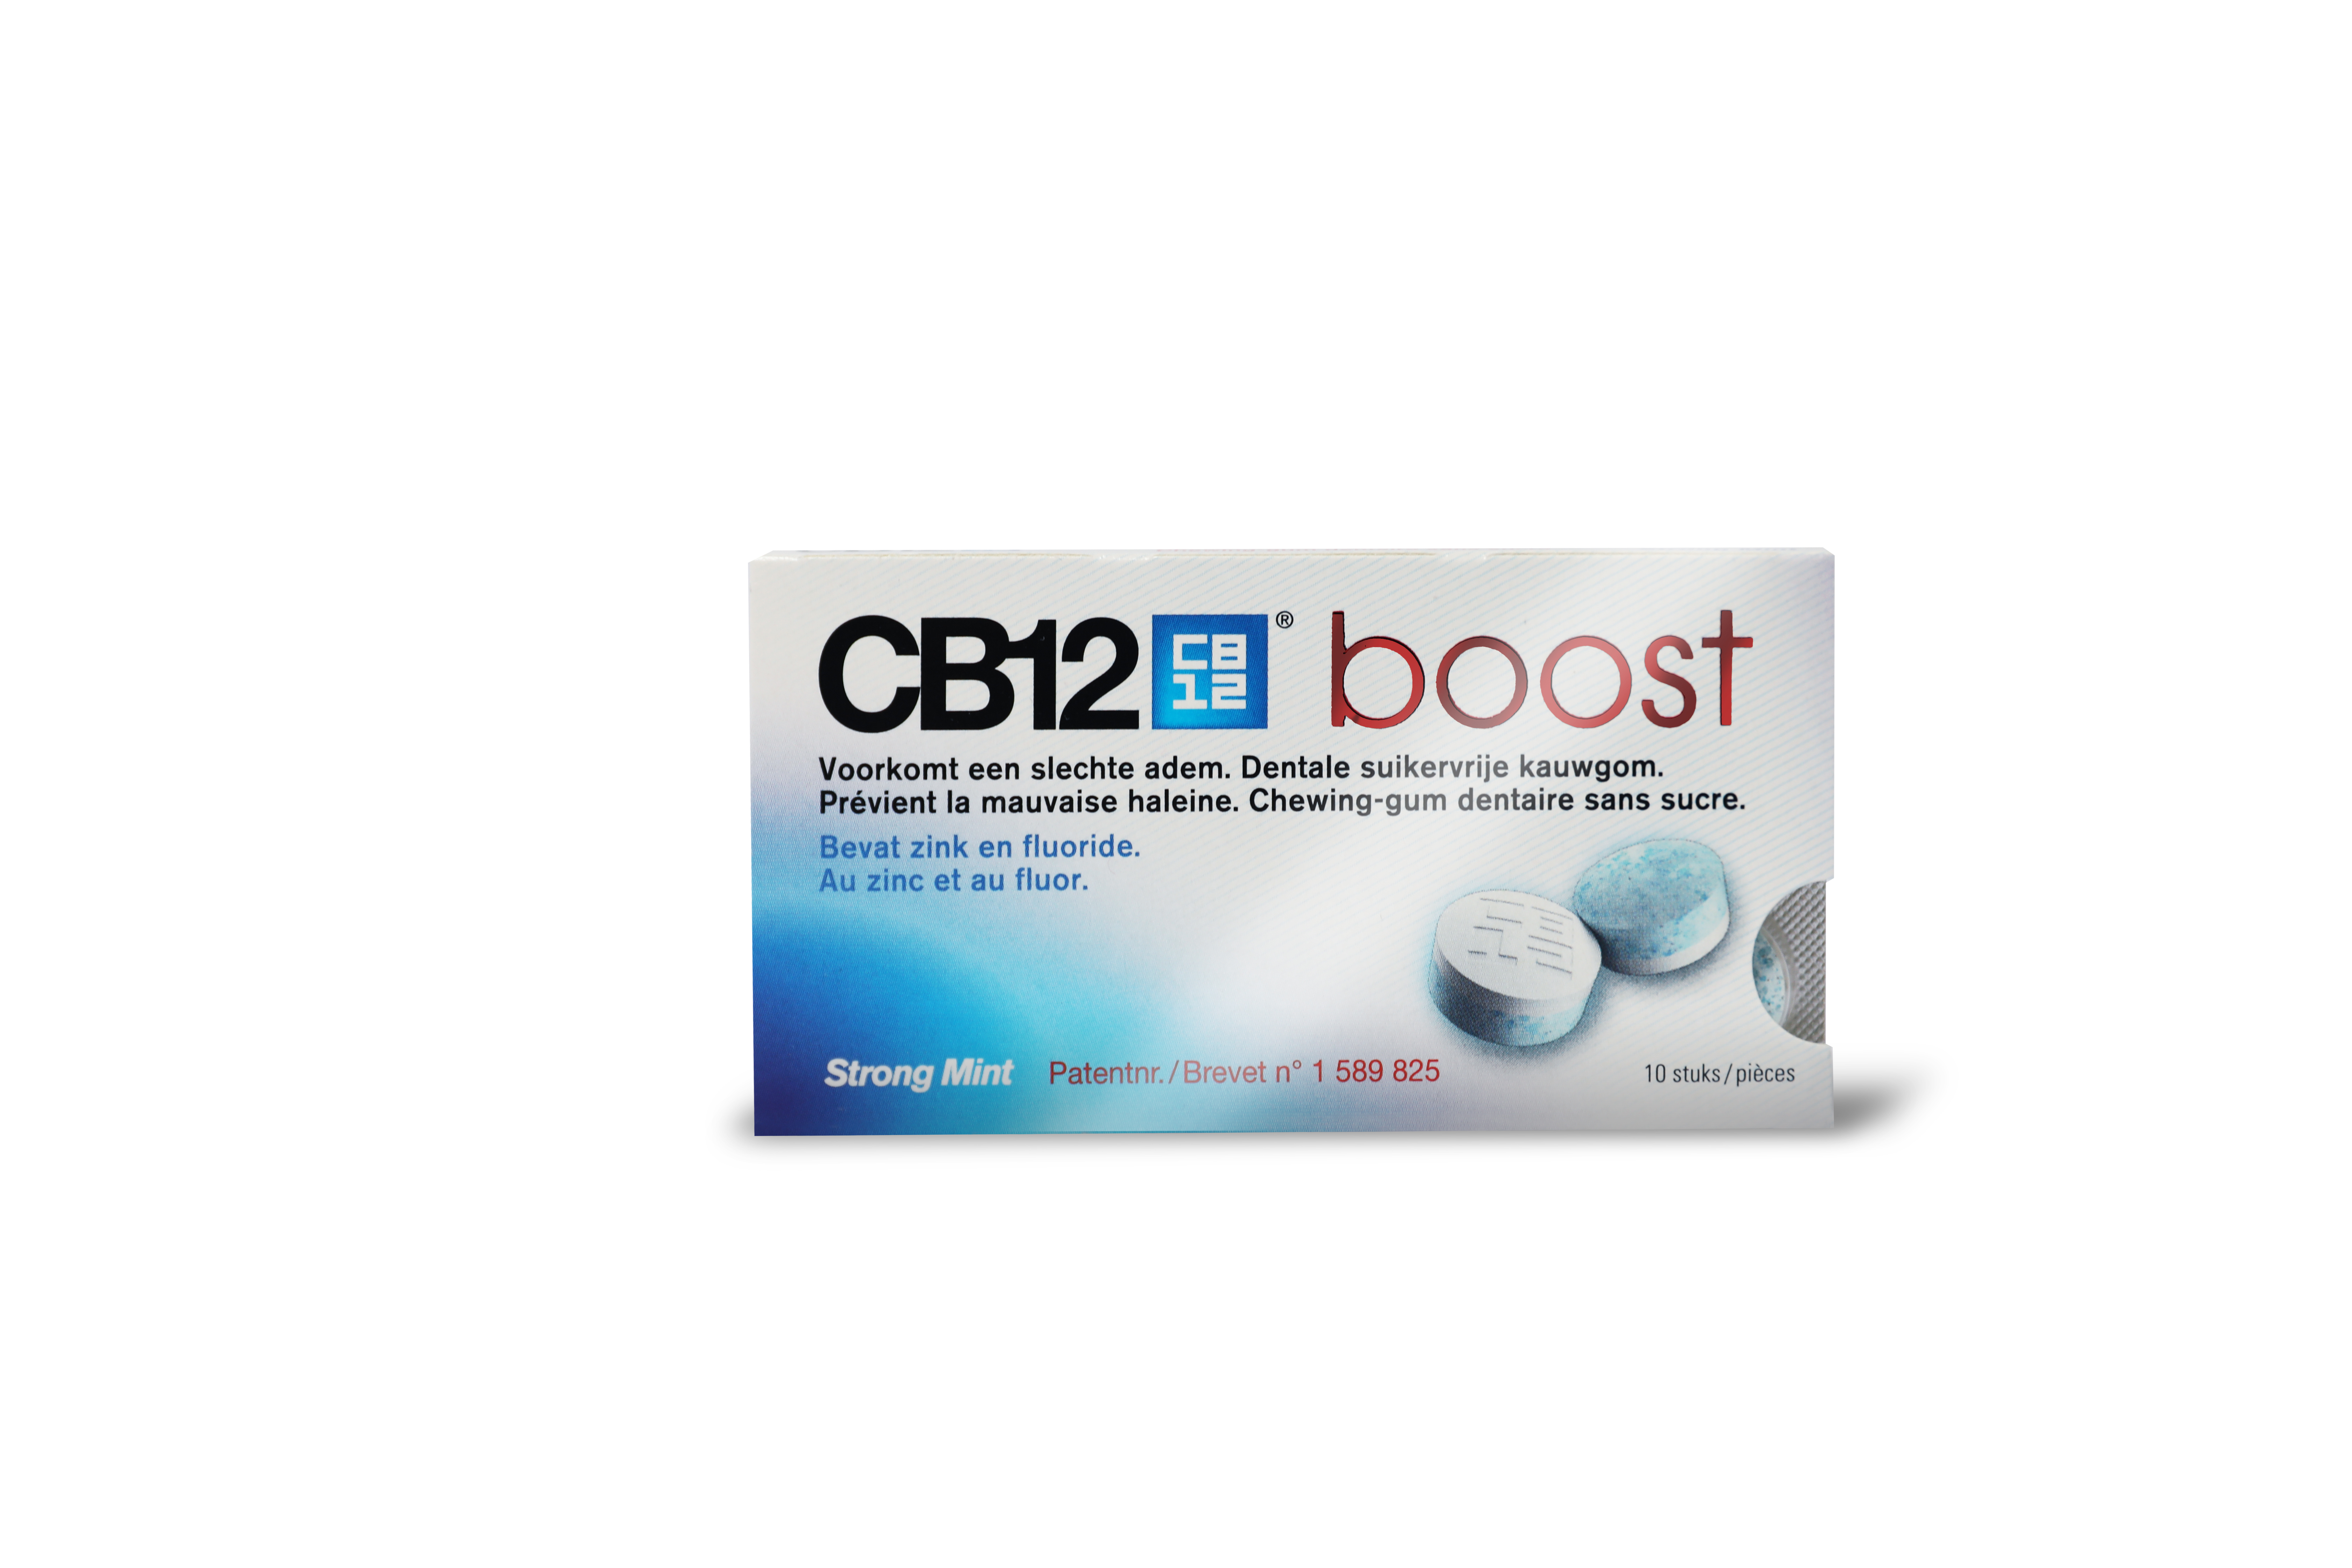 CB12 boost verbetert je mondgezondheid, doordat: